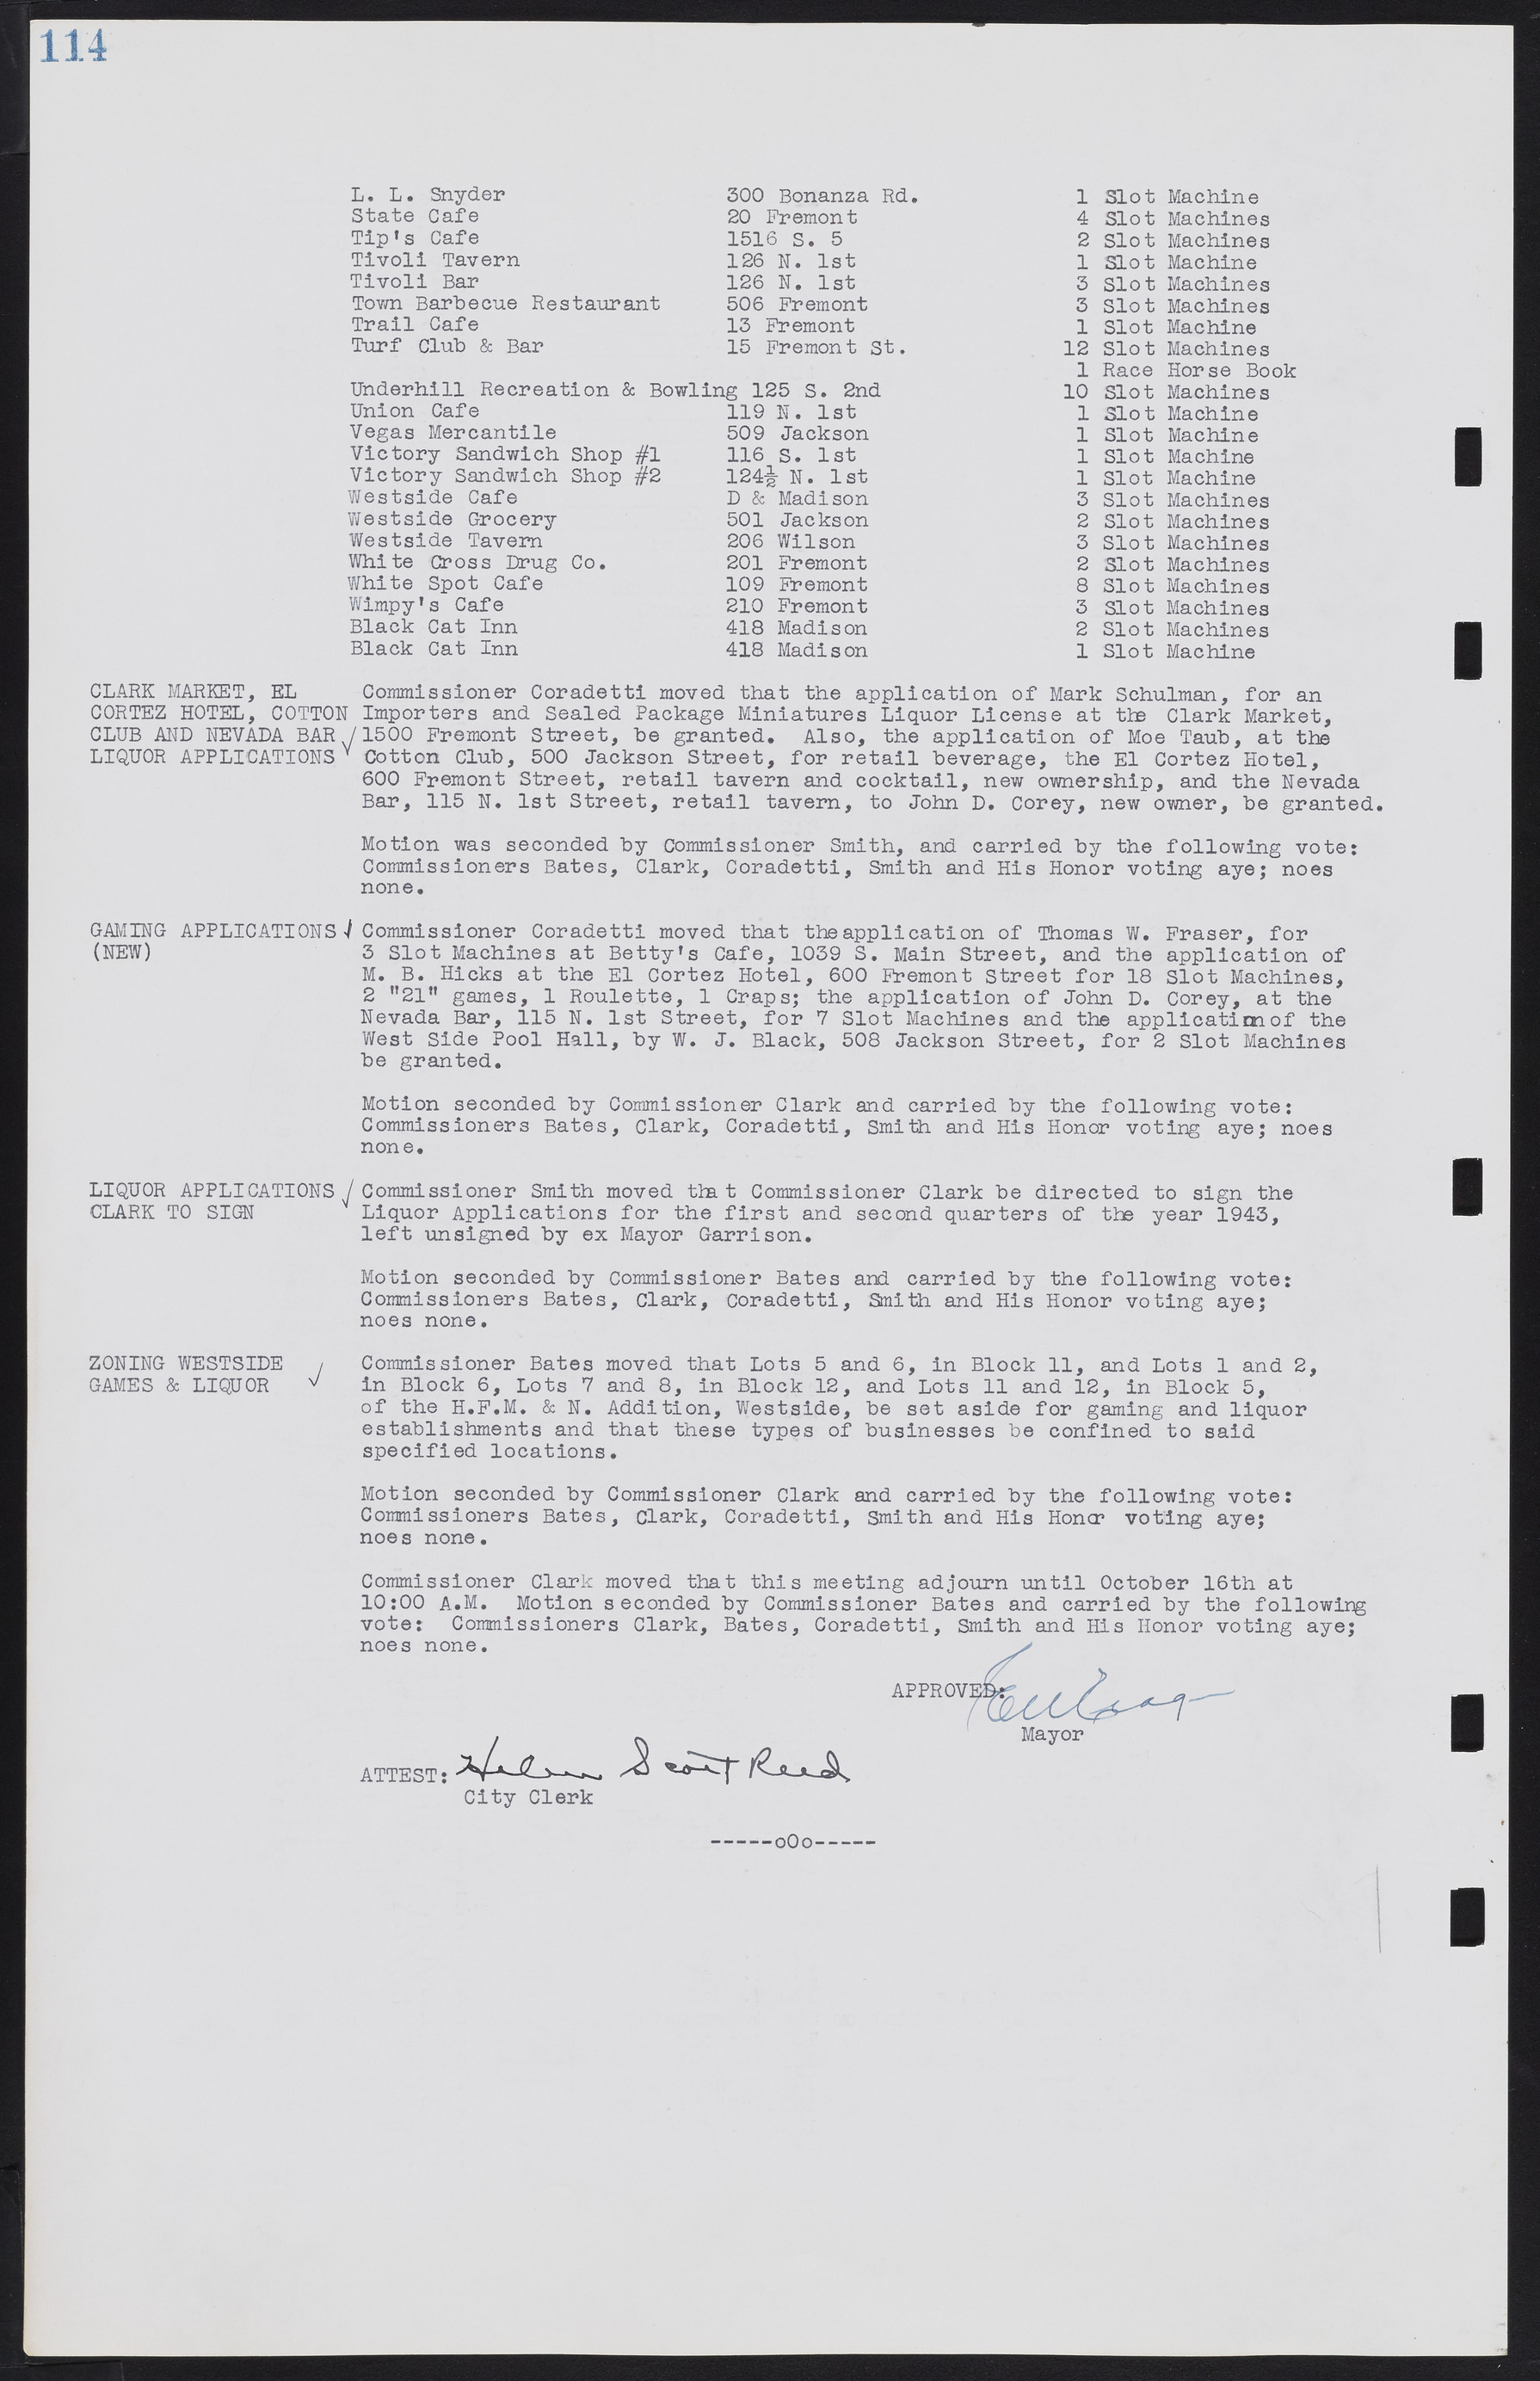 Las Vegas City Commission Minutes, August 11, 1942 to December 30, 1946, lvc000005-128